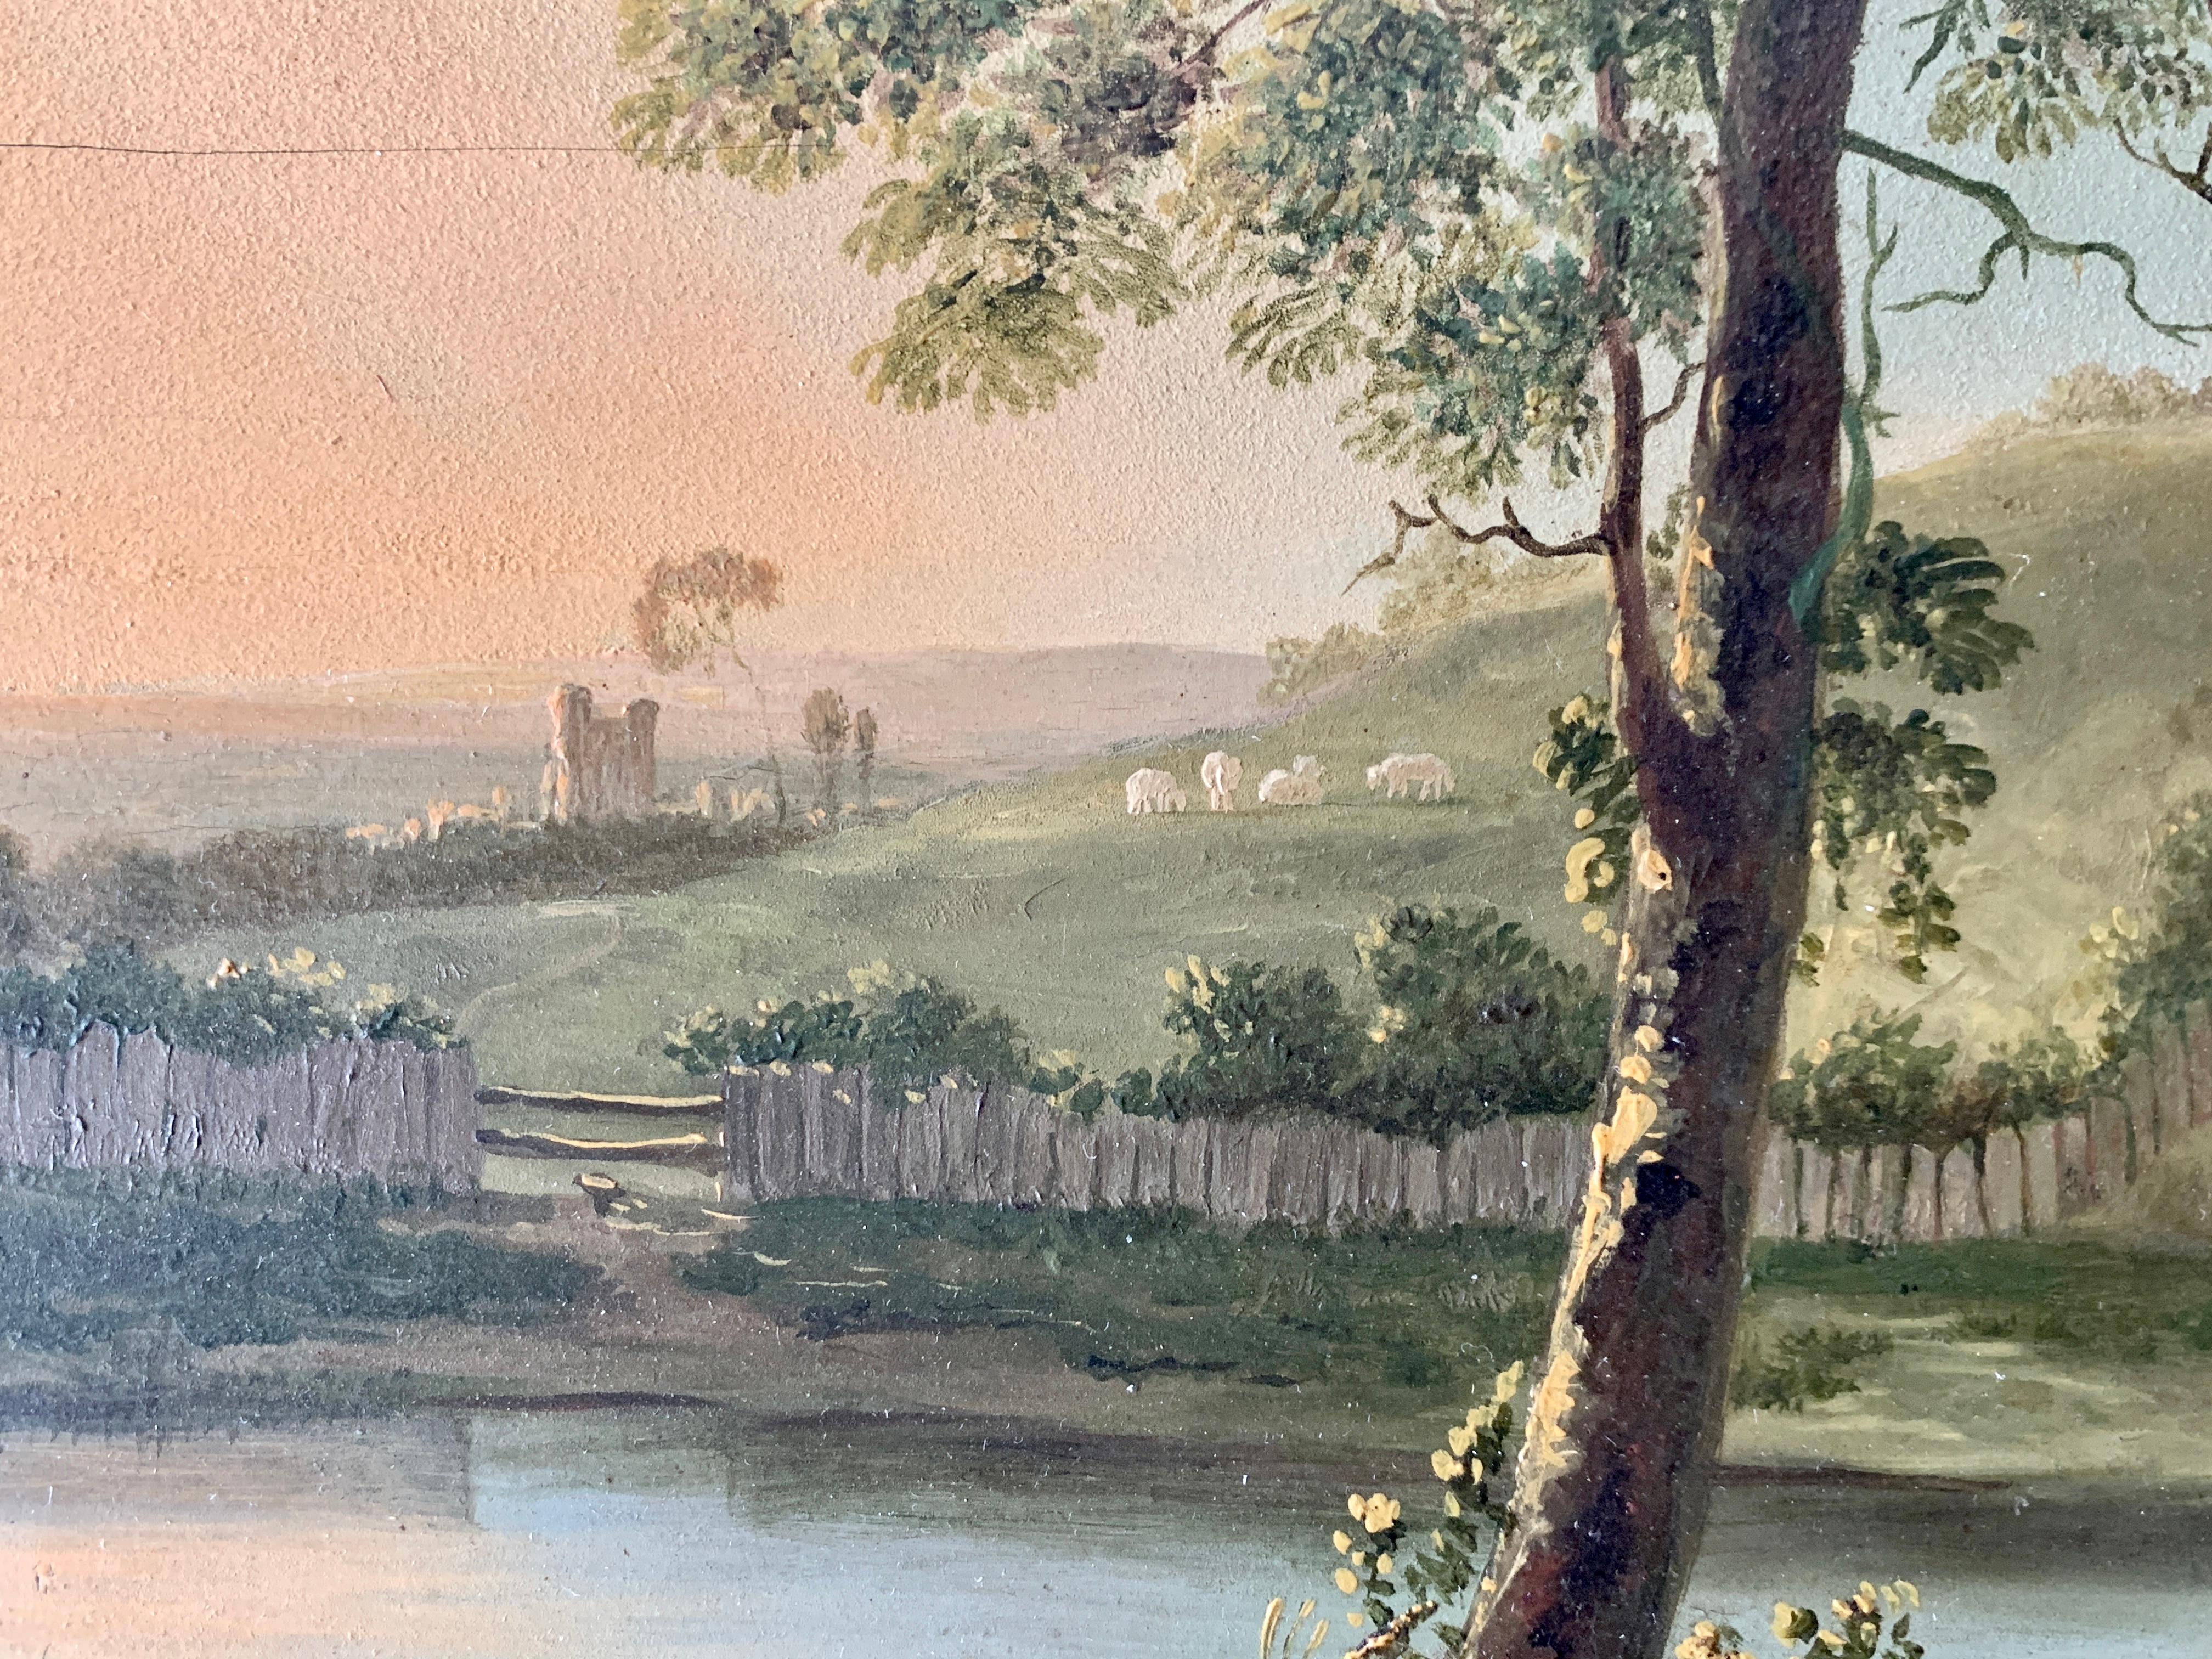 Wunderschöne englische Cottage-Landschaft aus dem frühen bis mittleren 19. Jahrhundert.

Dieses mit Öl auf einer Eichenholztafel gemalte Werk hat eine hervorragende Haptik und Qualität.

Gerahmt in seinem ursprünglichen Rahmen ist dieses Stück ein